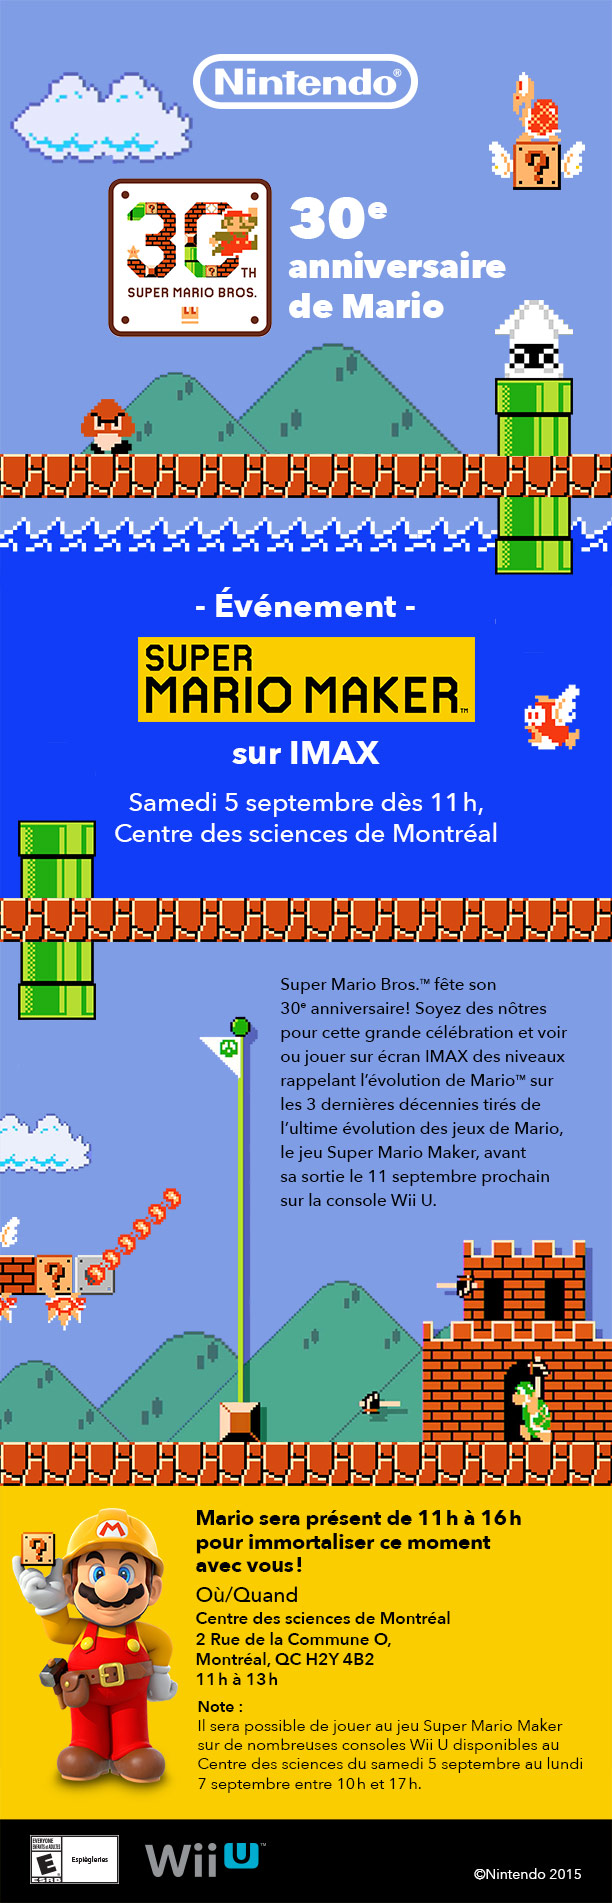 Super Mario Bros fête ses 30 ans et il vous invite à jouer a Super Mario Maker sur IMAX.